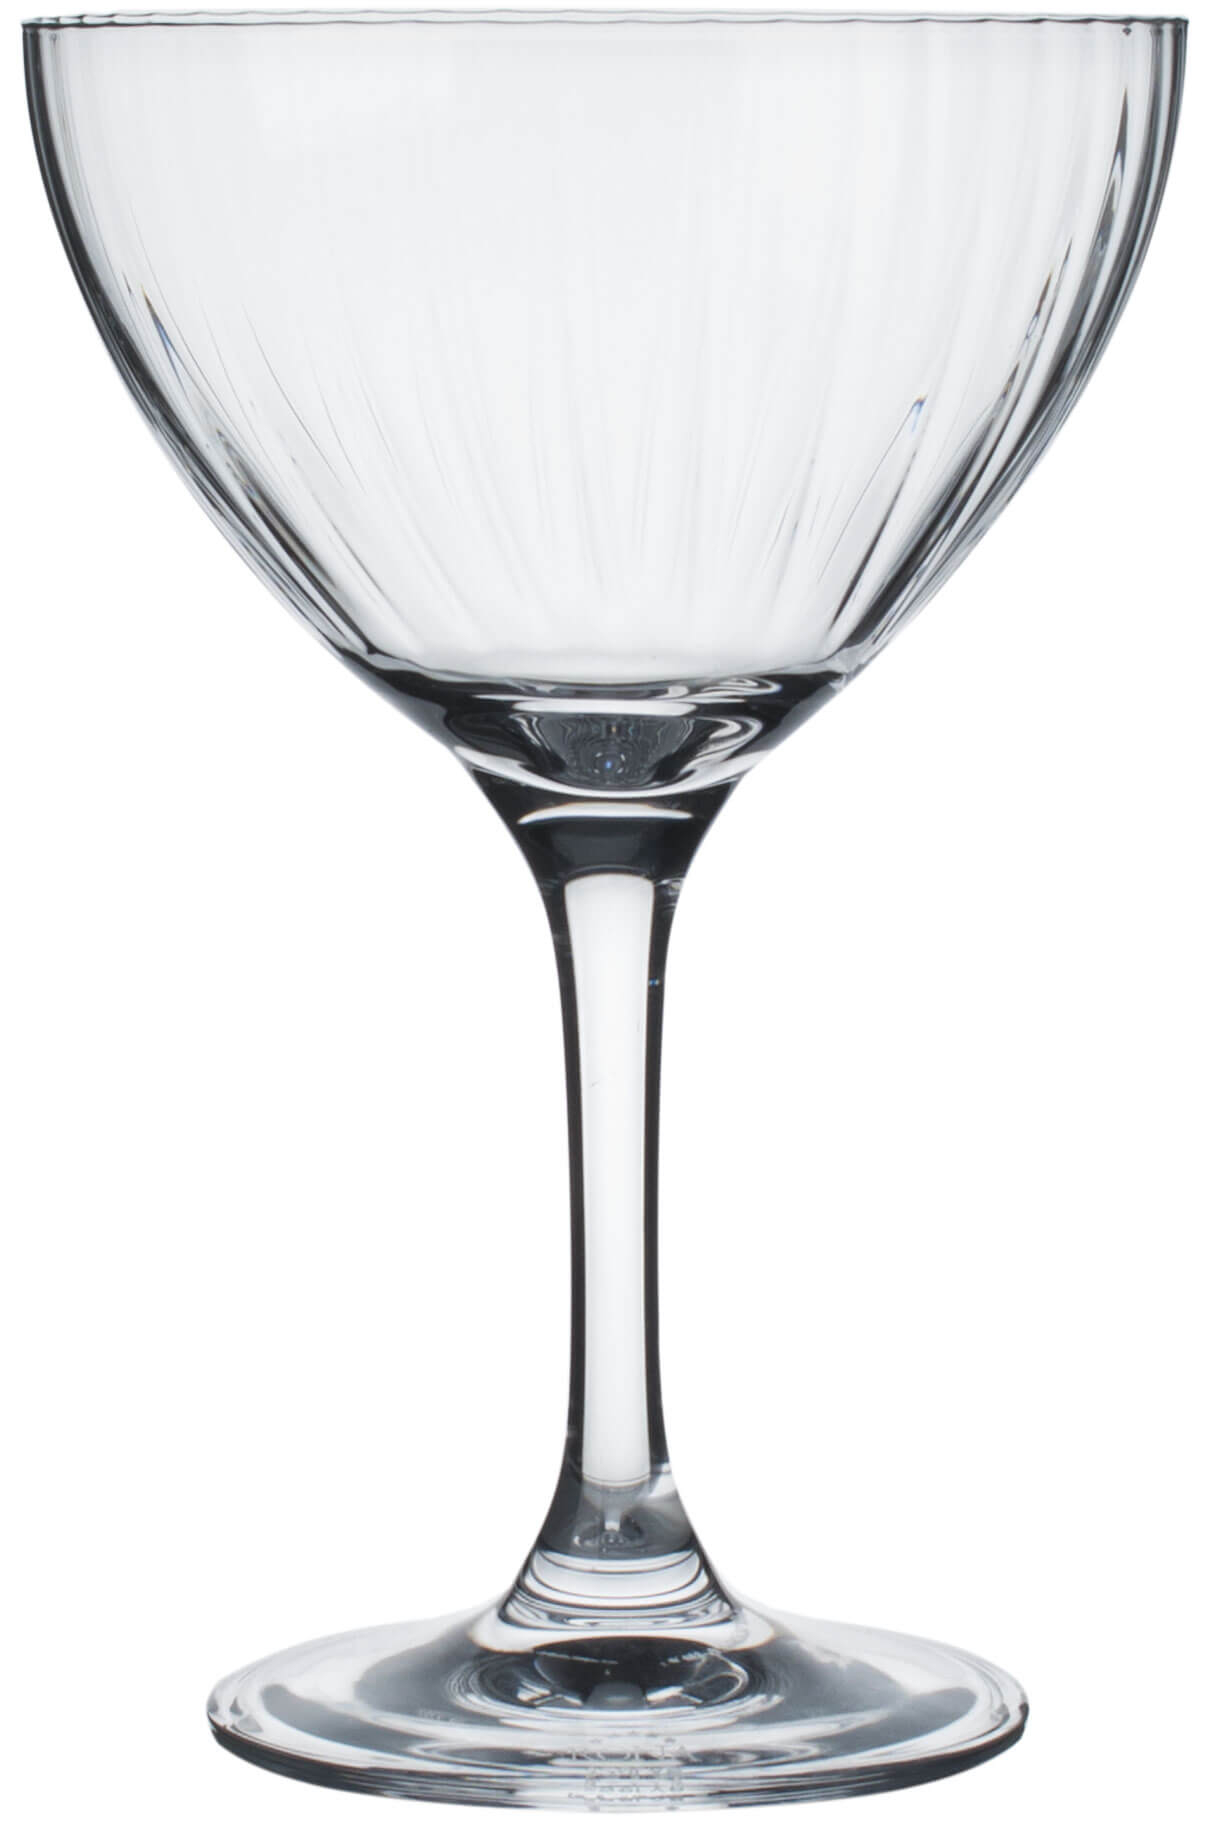 Martiniglas Optic Classic Cocktails, Rona - 250ml